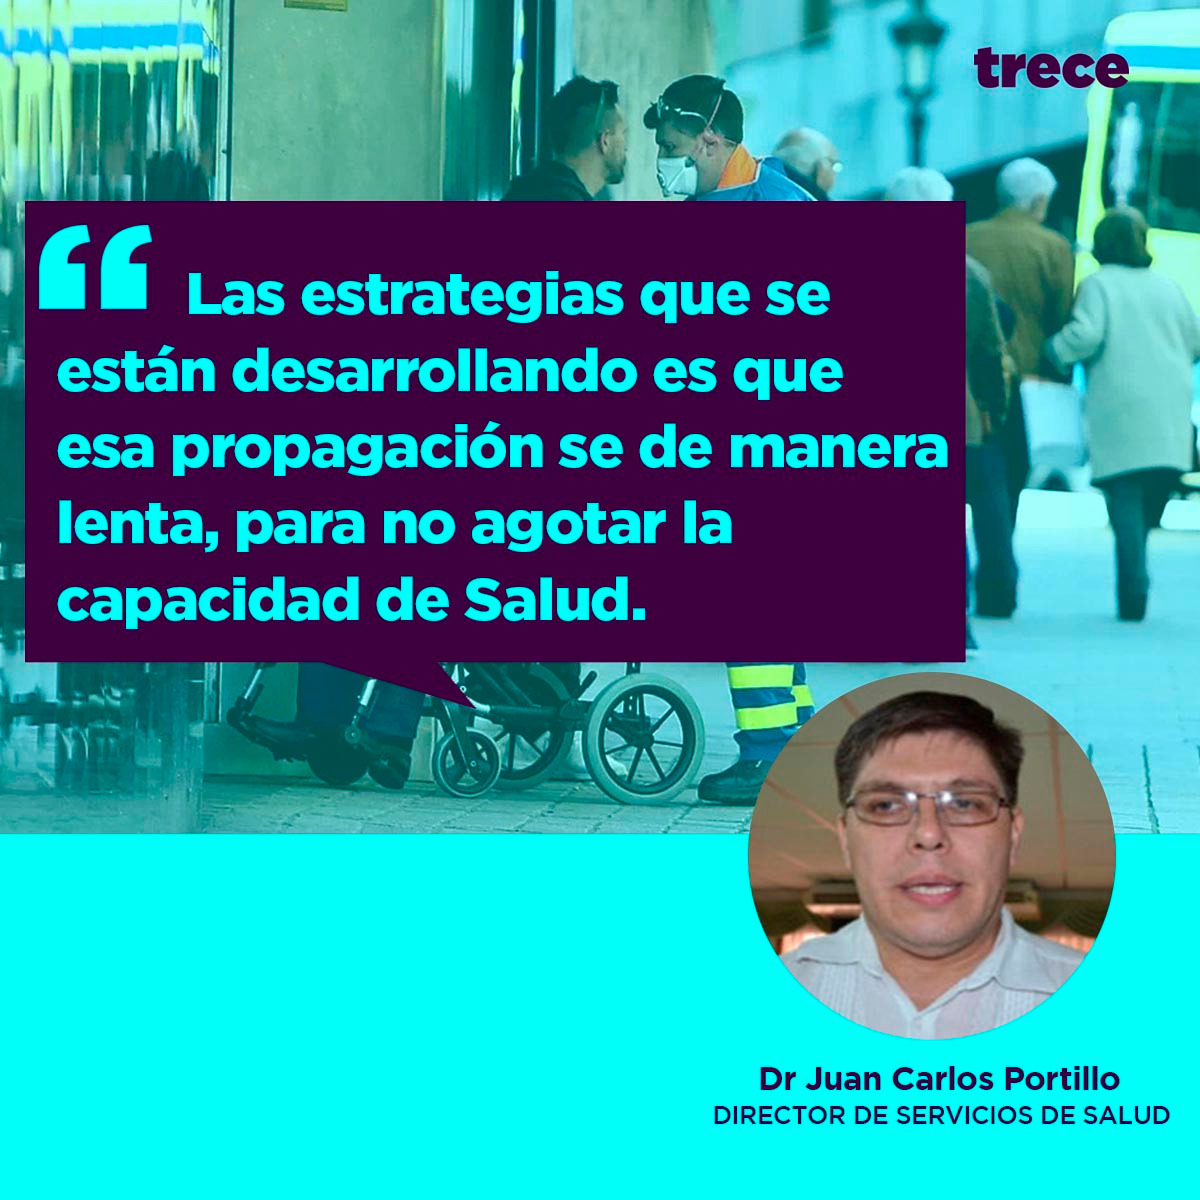 Dr. Juan Carlos Portillo